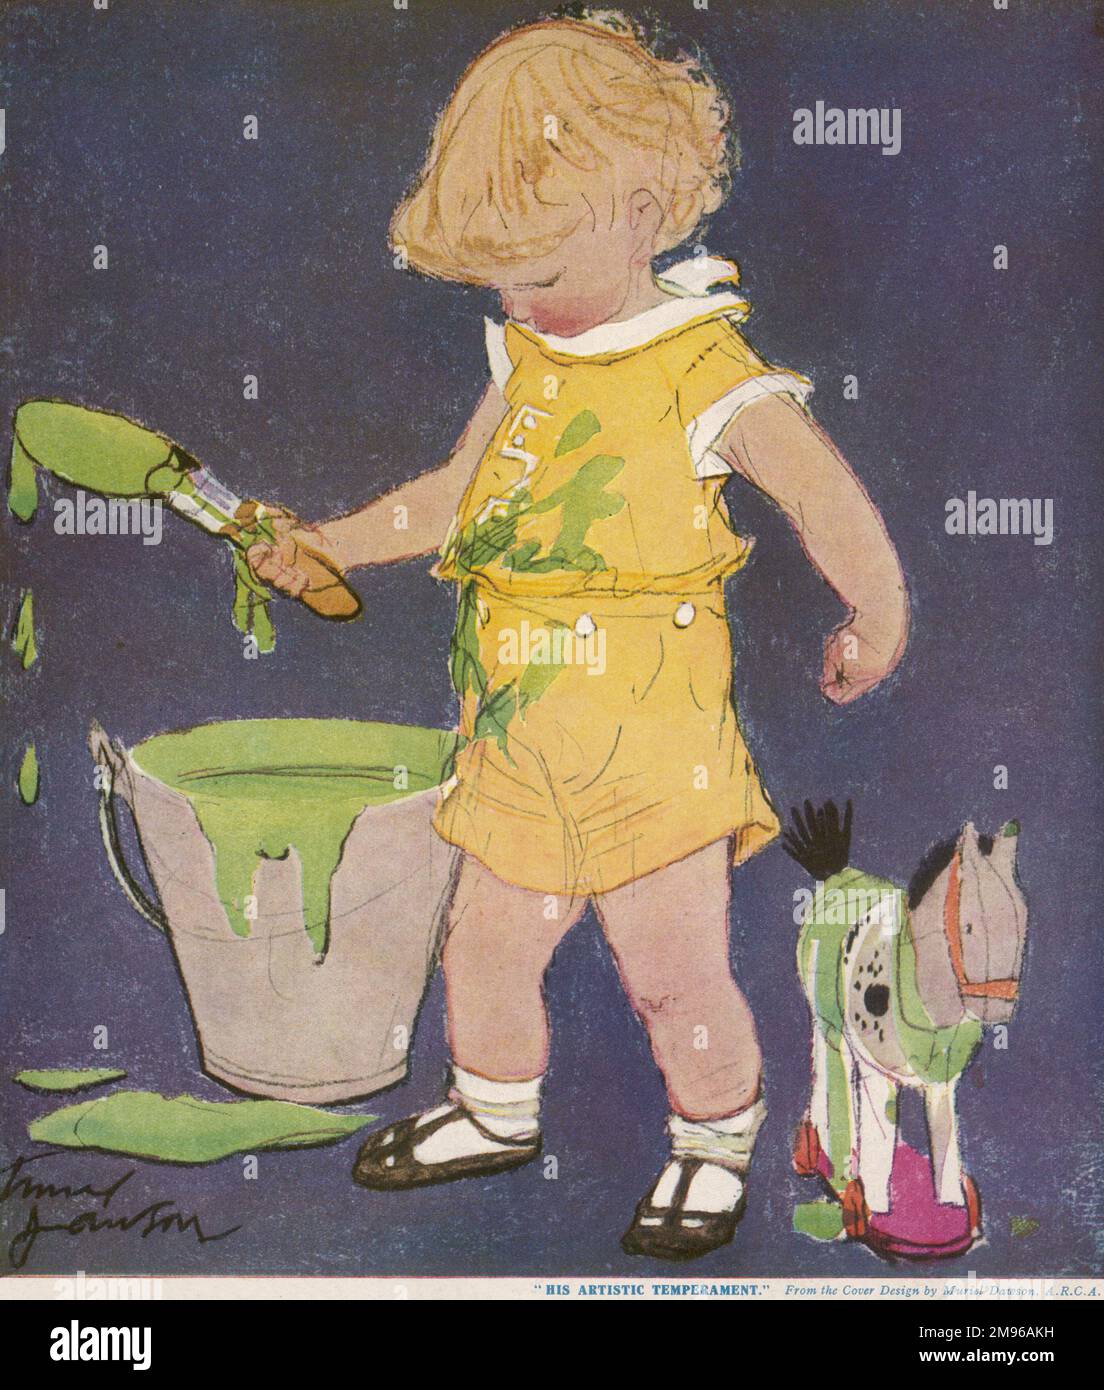 Ein kleiner Junge in gelben Shorts testet seine Kreativität auf einem Farbeimer, der ziemlich nachlässig auf dem Boden zurückgelassen wurde. Stockfoto